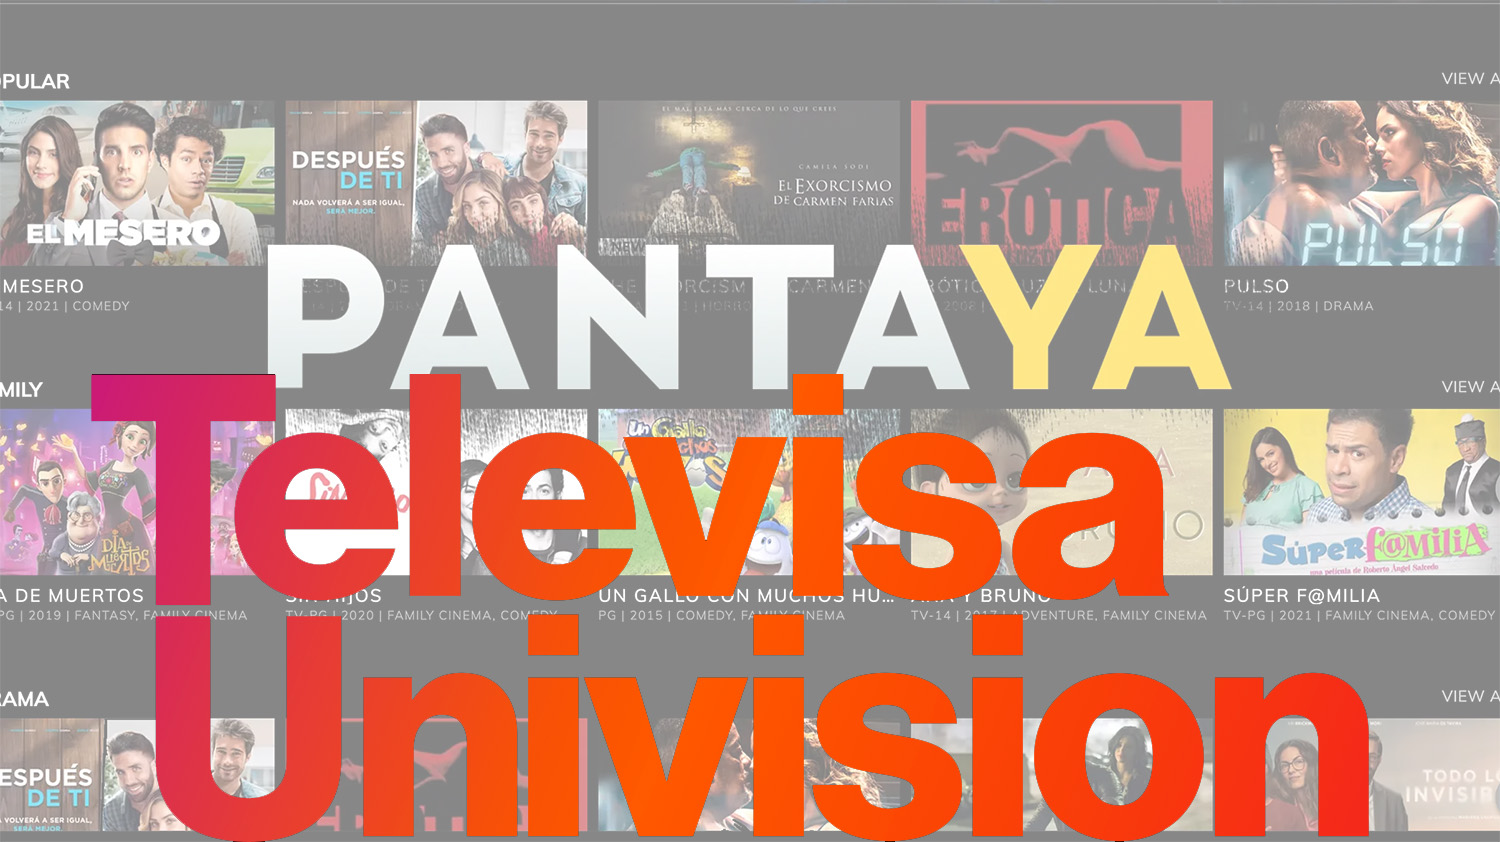 TelevisaUnivision compró plataforma latina Pantaya